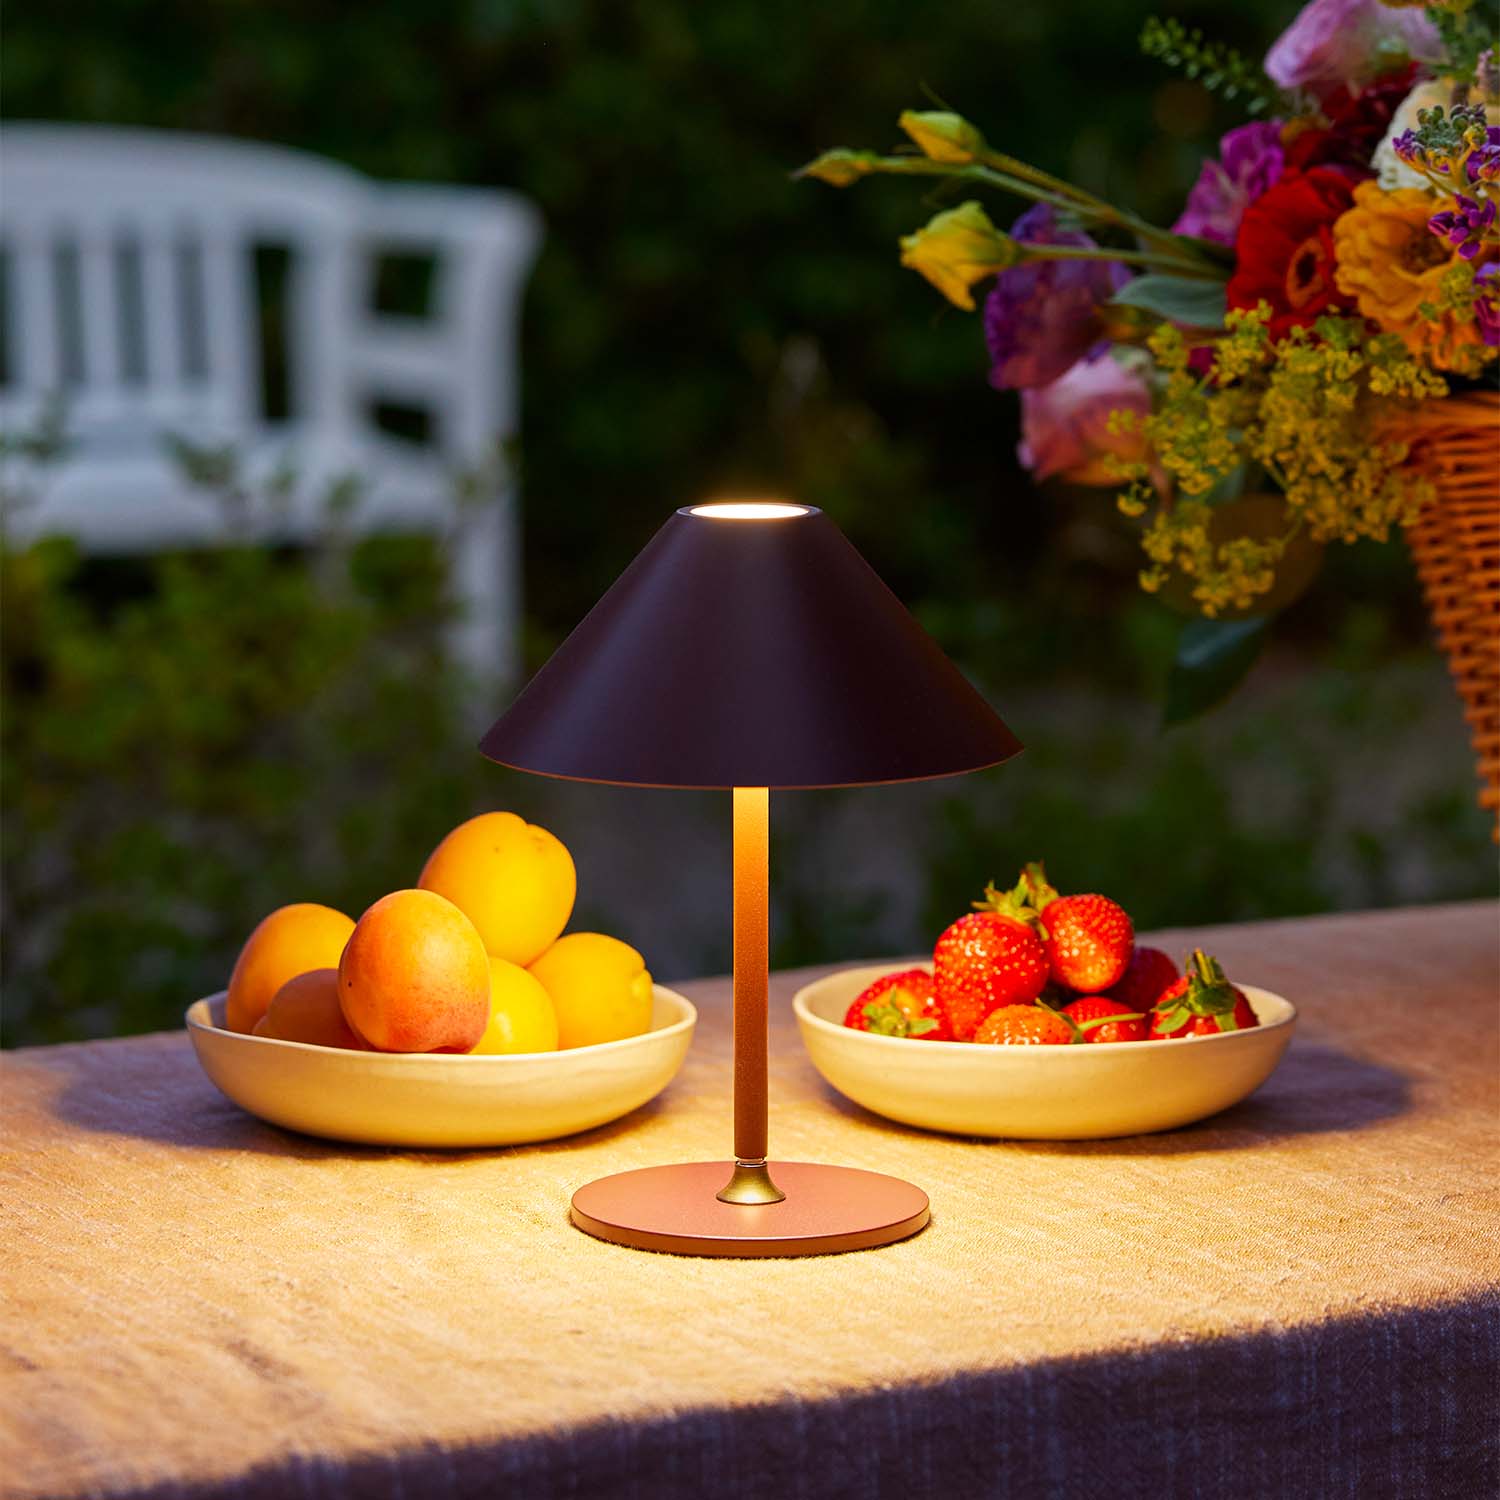 HYGGE - Lampe de table nomade design sans-fil